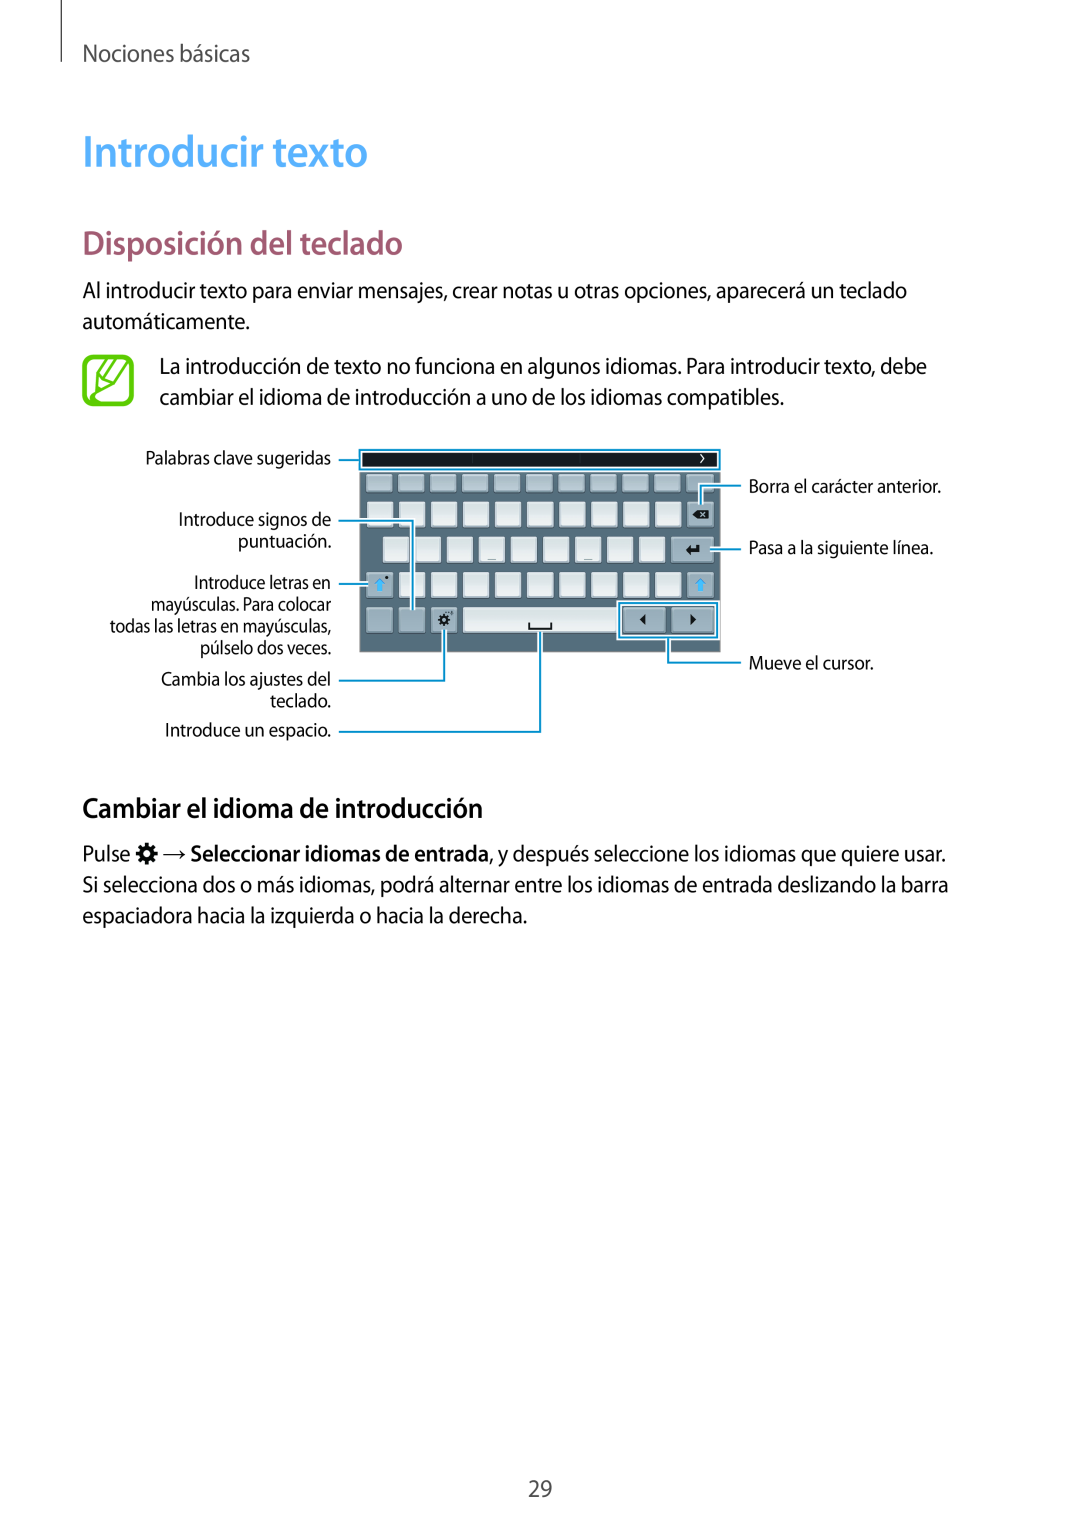 Samsung SM-T700NTSATGY Introducir texto, Disposición del teclado, Cambiar el idioma de introducción, Nociones básicas 